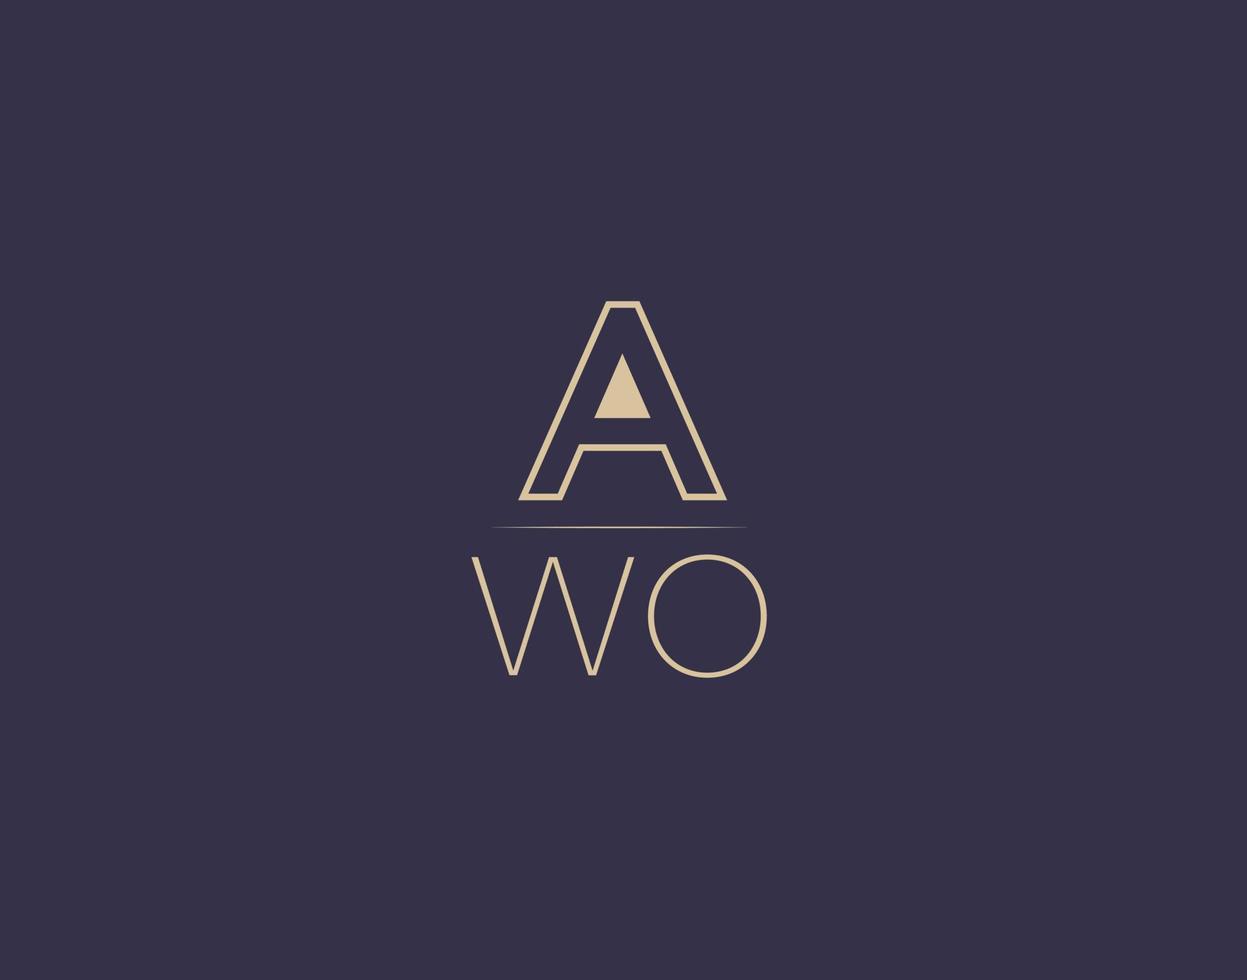 AWO letter logo design modern minimalist vector images